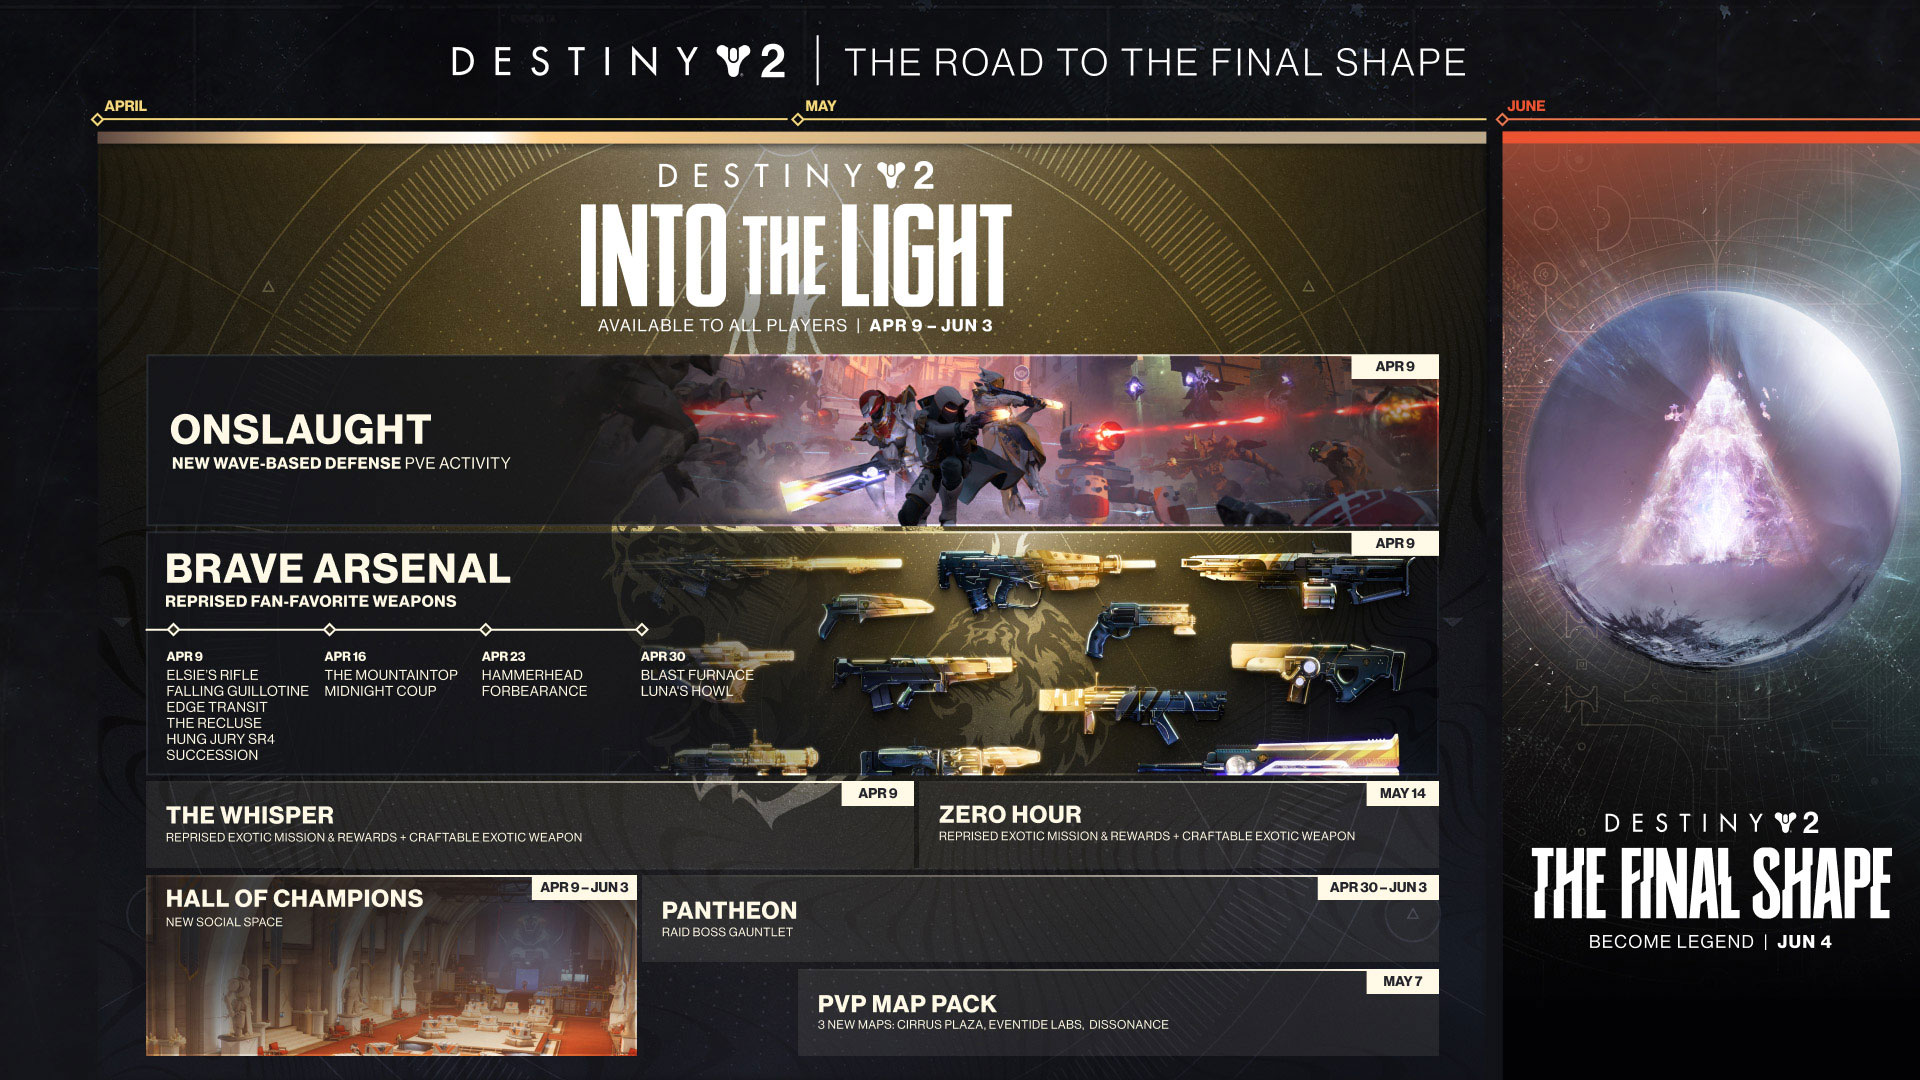 Destiny 2: The Final Shape launches June 4